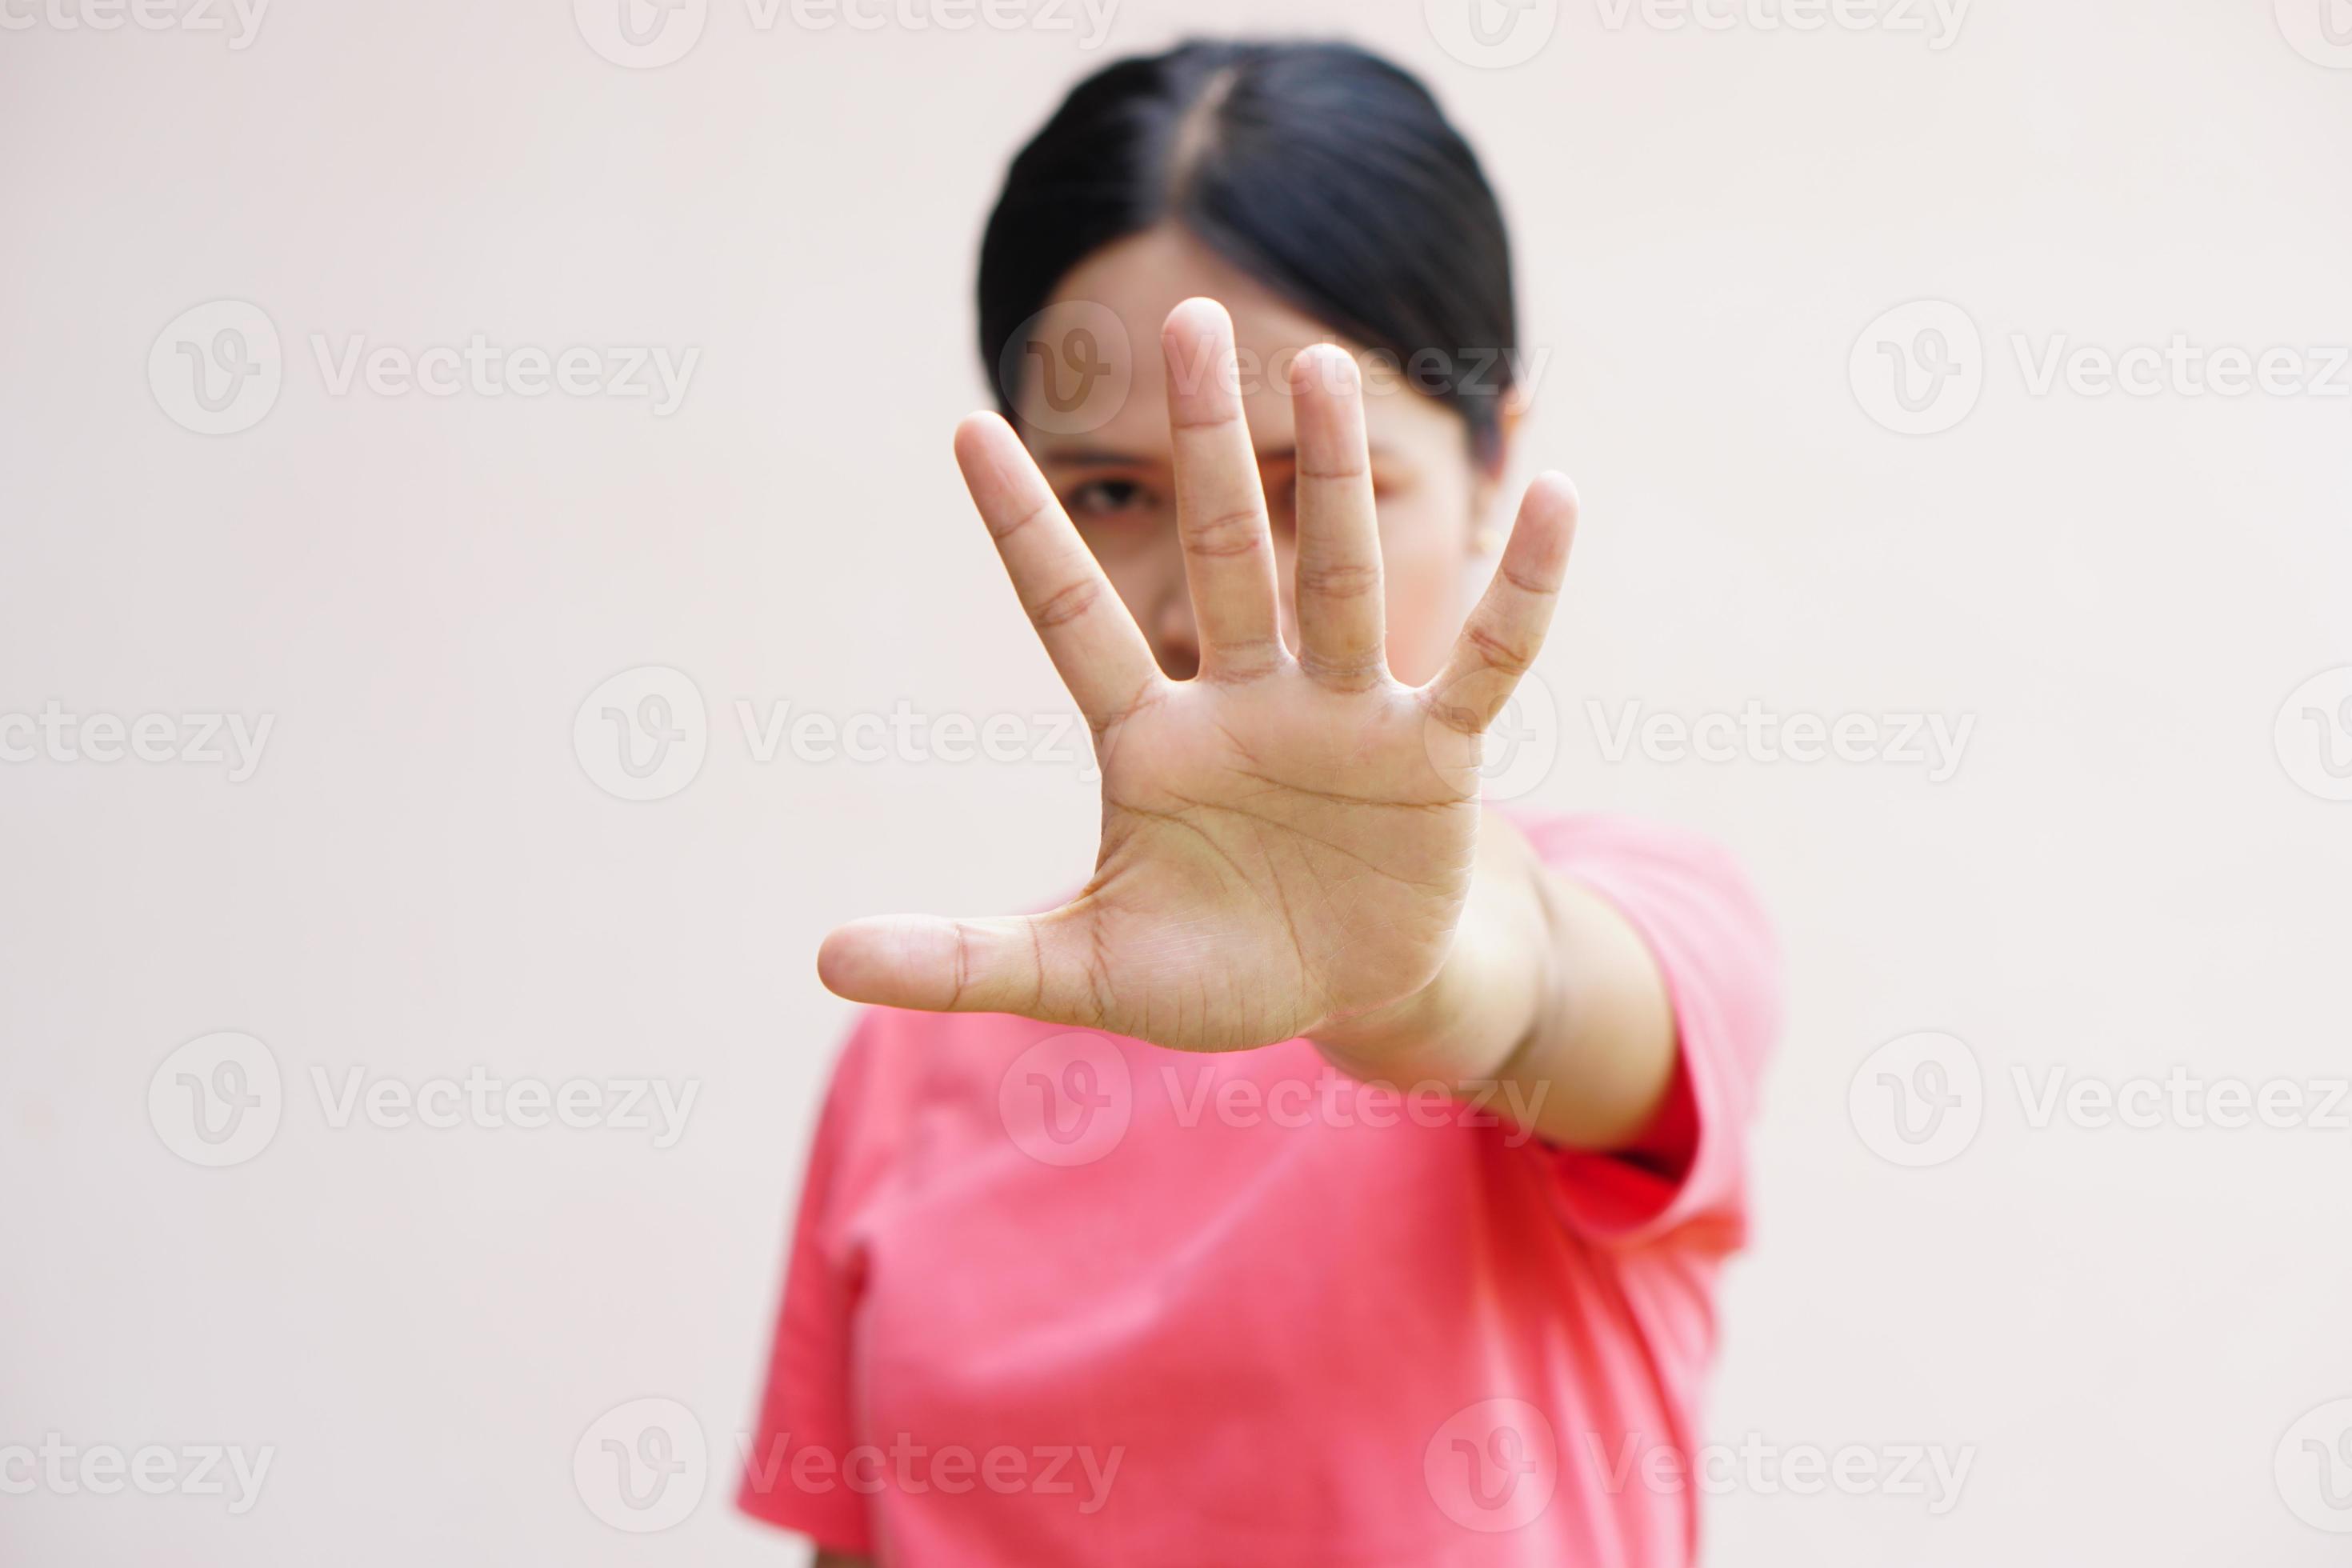 Frau hob ihre Hand, um davon abzubringen, Kampagne stoppt Gewalt gegen Frauen foto